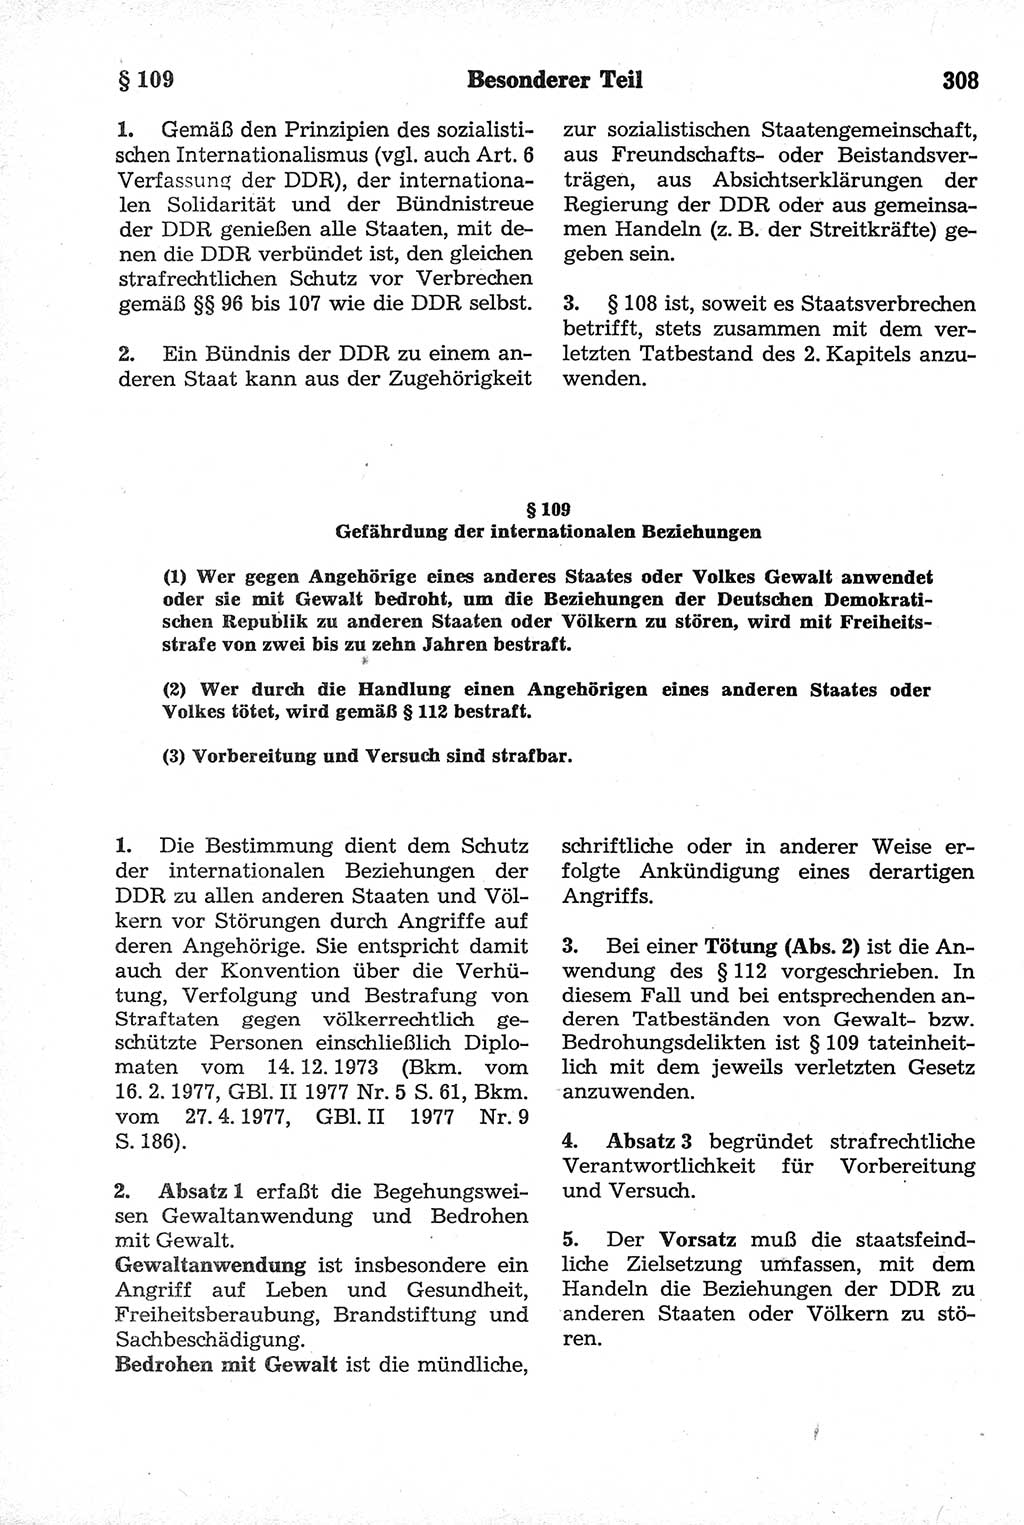 Strafrecht der Deutschen Demokratischen Republik (DDR), Kommentar zum Strafgesetzbuch (StGB) 1981, Seite 308 (Strafr. DDR Komm. StGB 1981, S. 308)